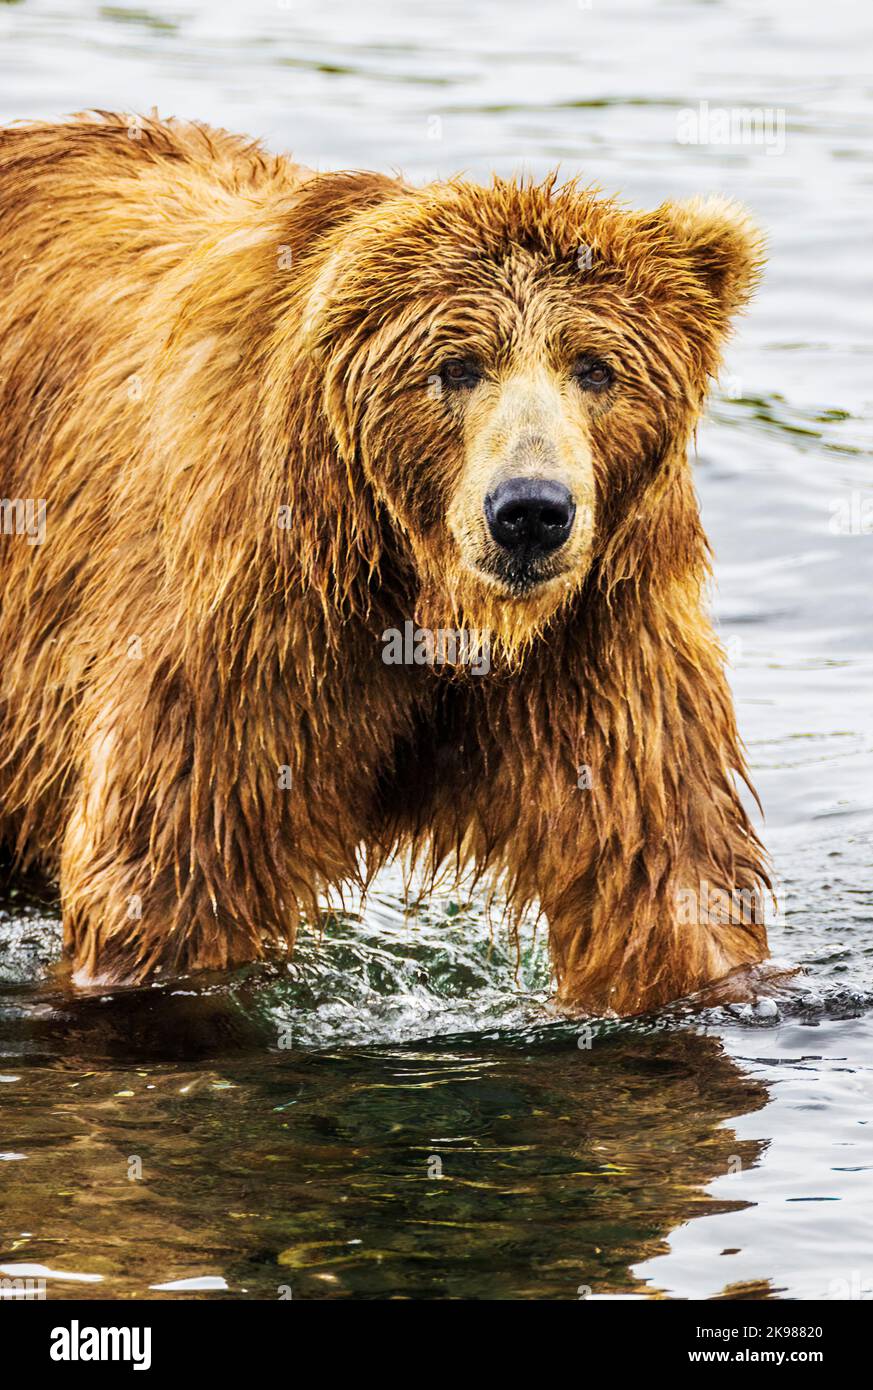 Ours brun adulte; Ursus arctos midendorffi; pêche au saumon sockeye; ours grizzly; refuge national de la faune de l'île Kodiak; Alaska; États-Unis Banque D'Images